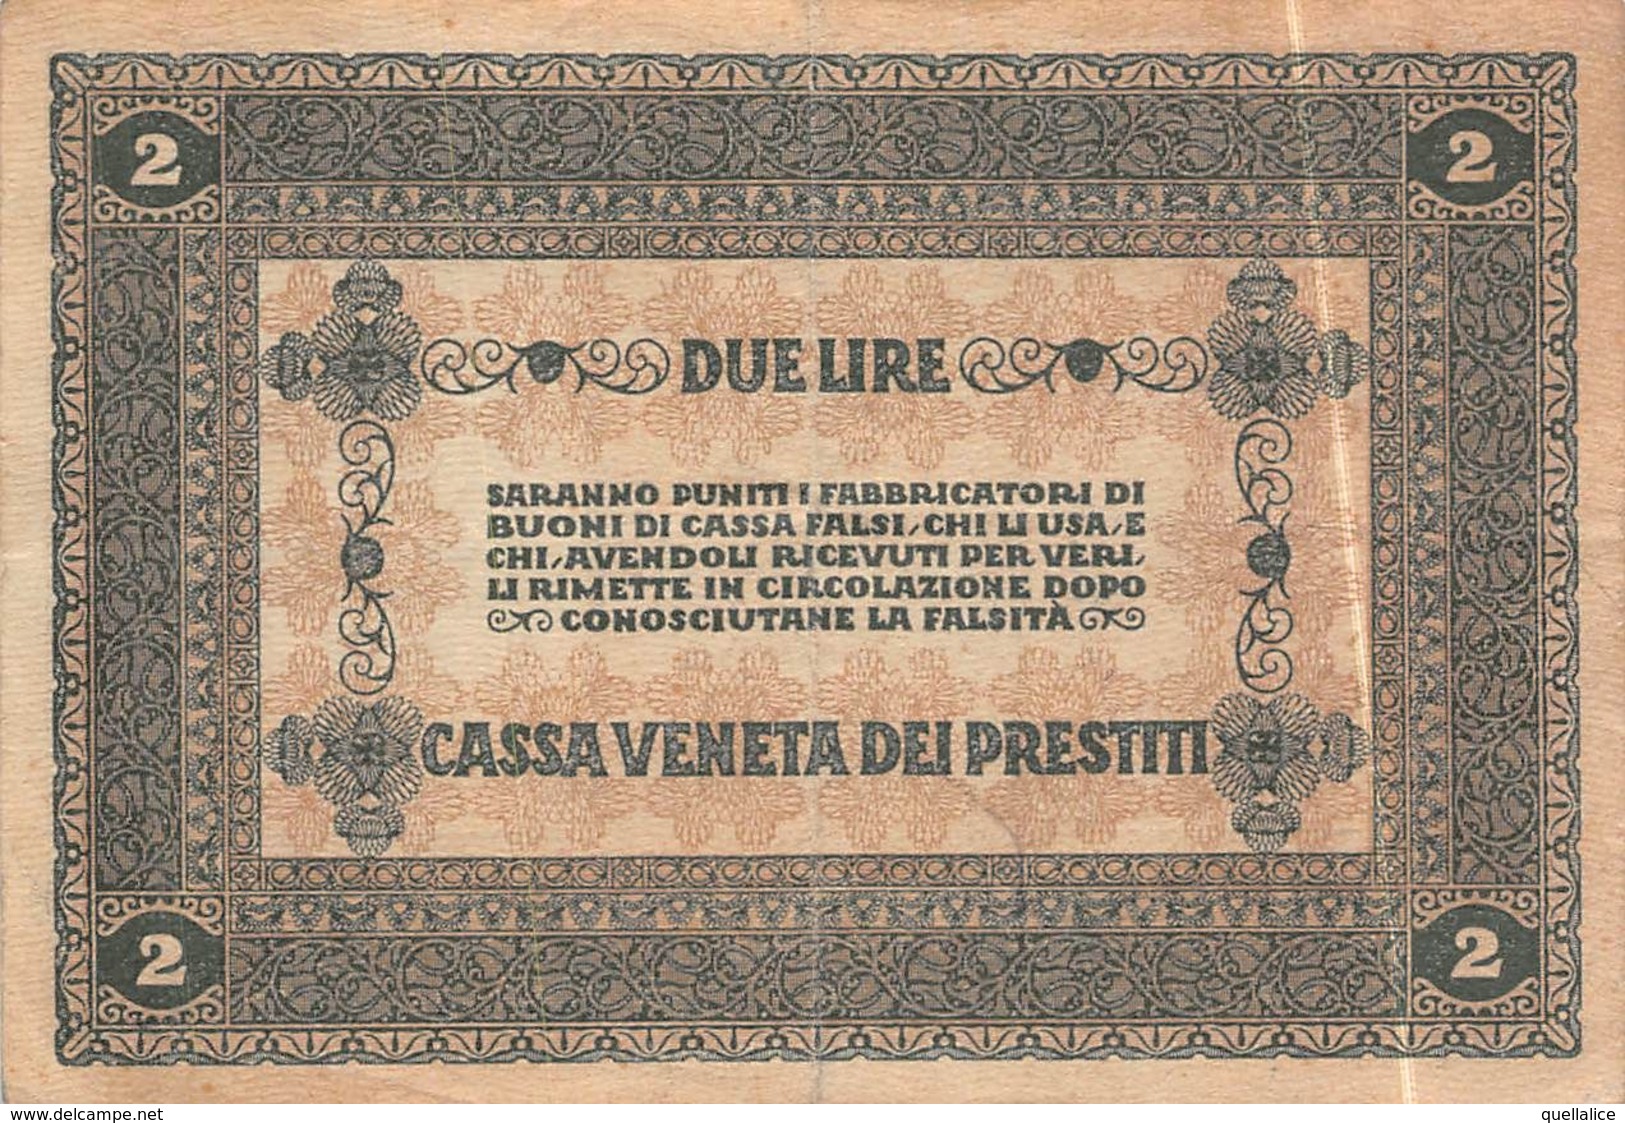 01616 "CASSA VENETA DEI PRESTITI - 2 GENNAIO 1918 - BUONO CASSA A CORSO LEGALE DA DUE LIRE" ORIGINALE - [10] Checks And Mini-checks